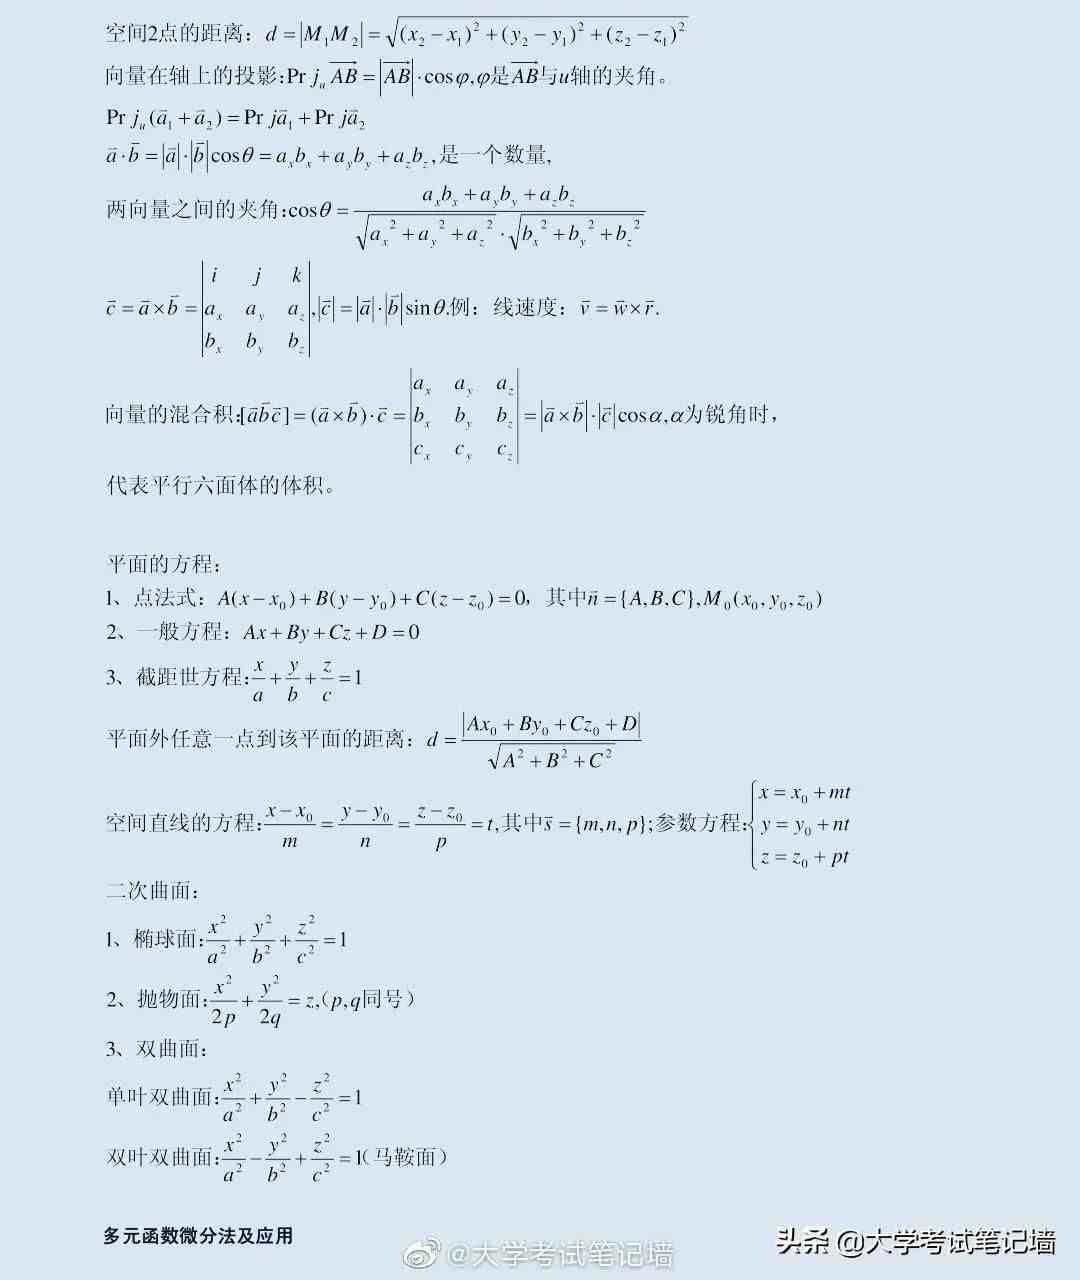 微积分公式表|高中数学常用超纲公式